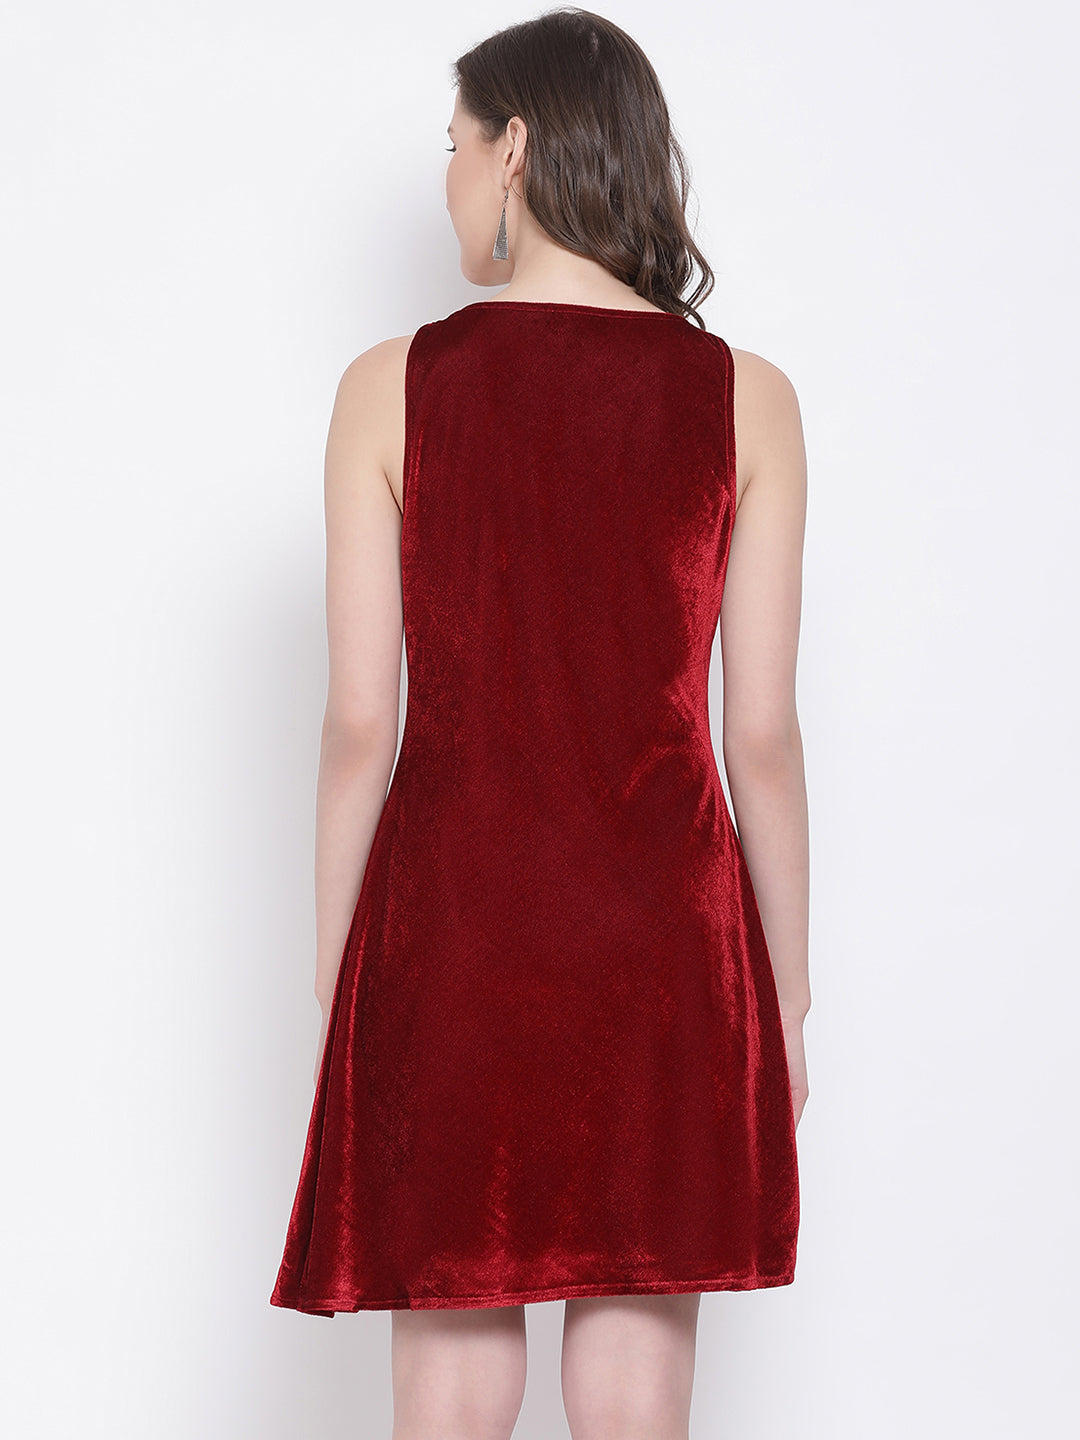 LY2 Velvet Red V-Neck Sleeveless A-Line Party Dress For Women